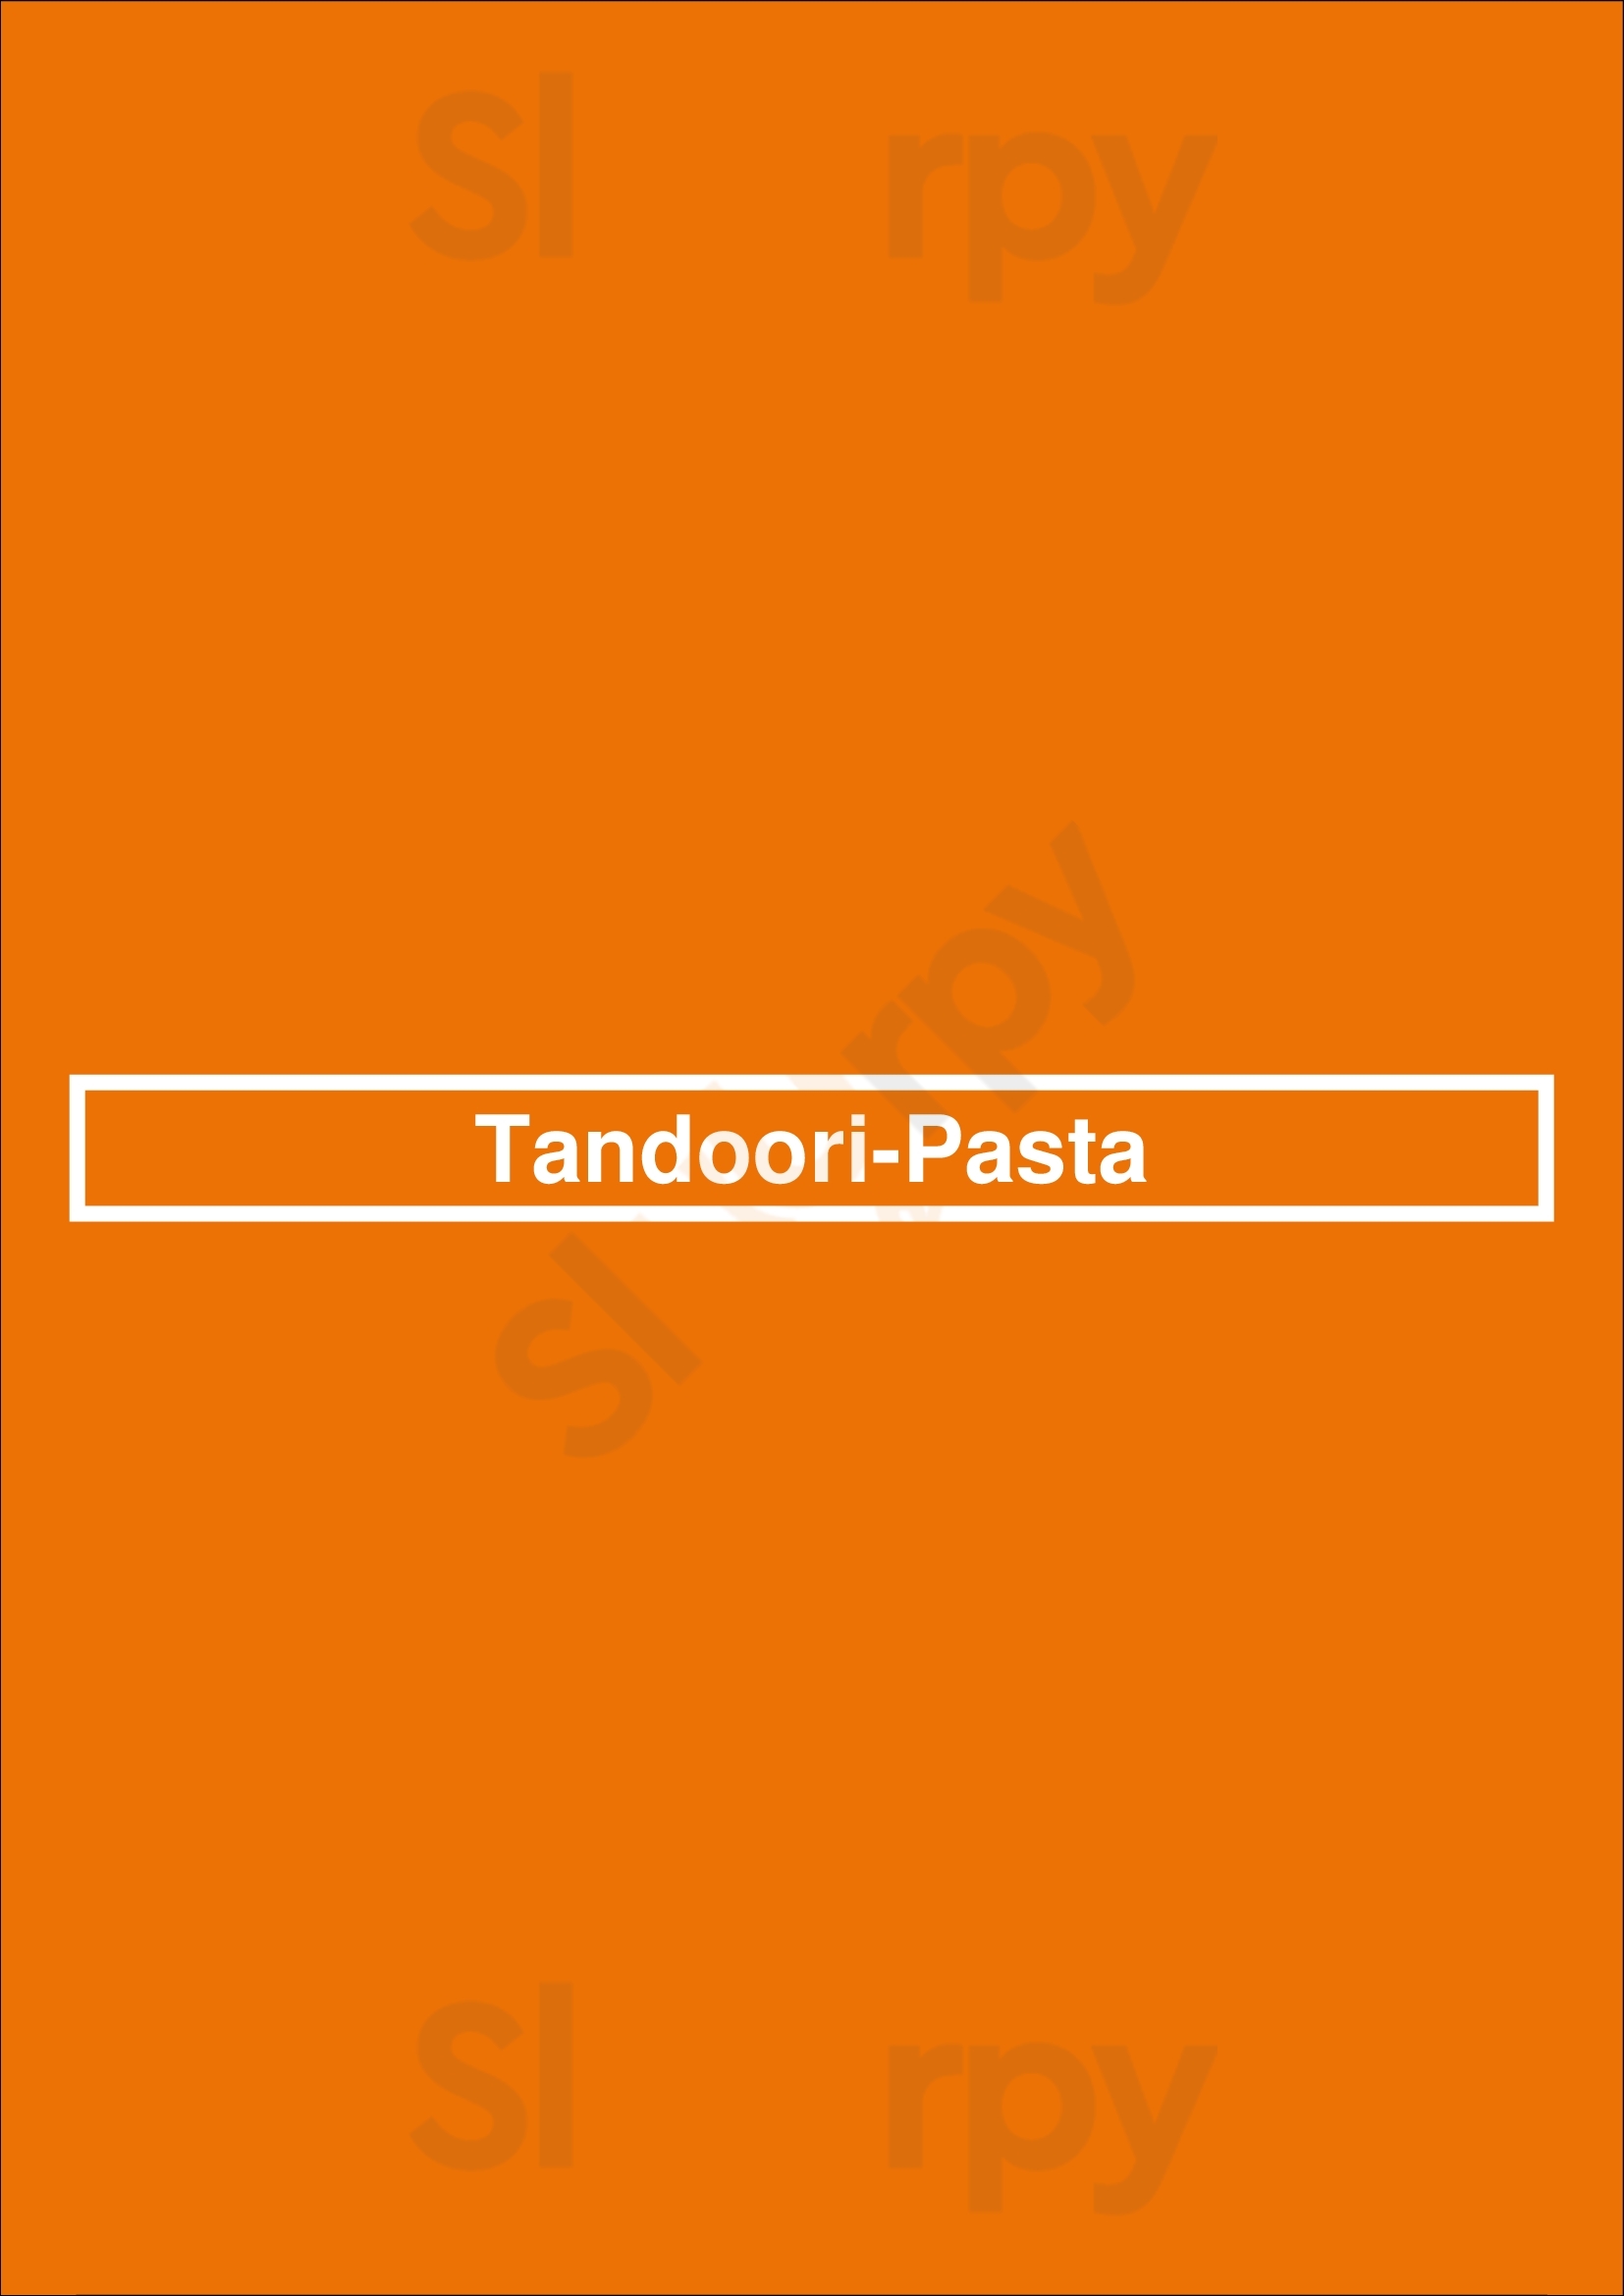 Tandoori-pasta Anvers Menu - 1